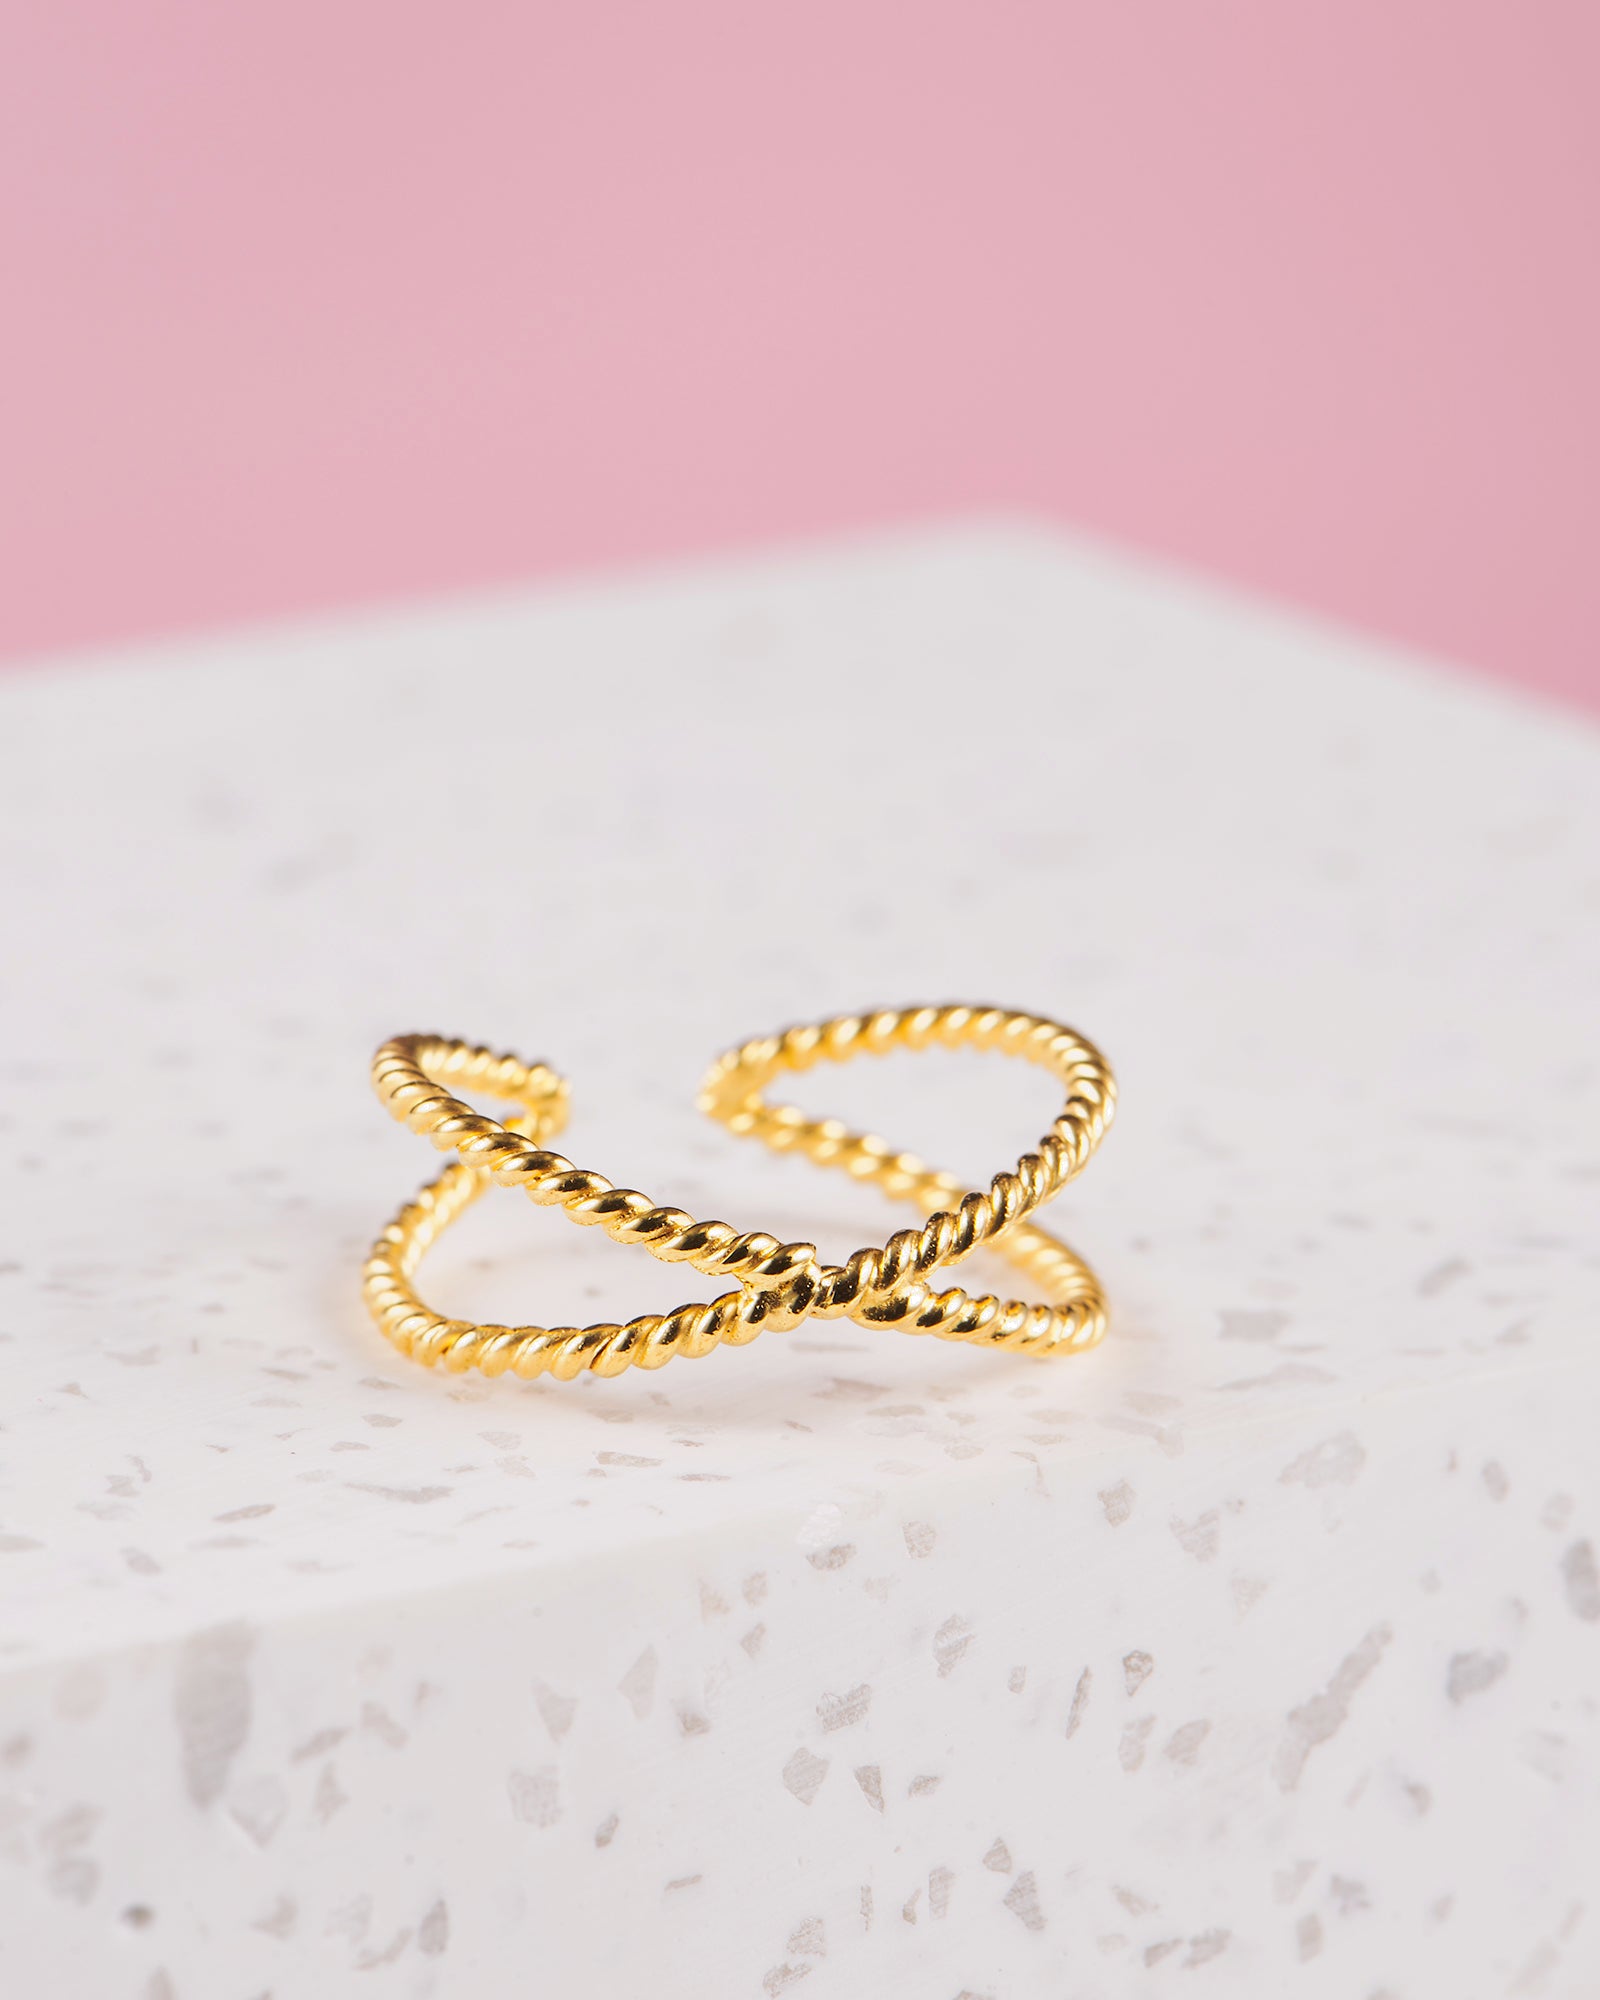 Handmade with love | VERLAN Jewellery | Fairfashion | Handgemachte Ringe im Boho Look aus Bali | Fair und nachhaltig handgefertigter Schmuck | Verstellbarer Ring | Kombi & adjustable Ring | vergoldet